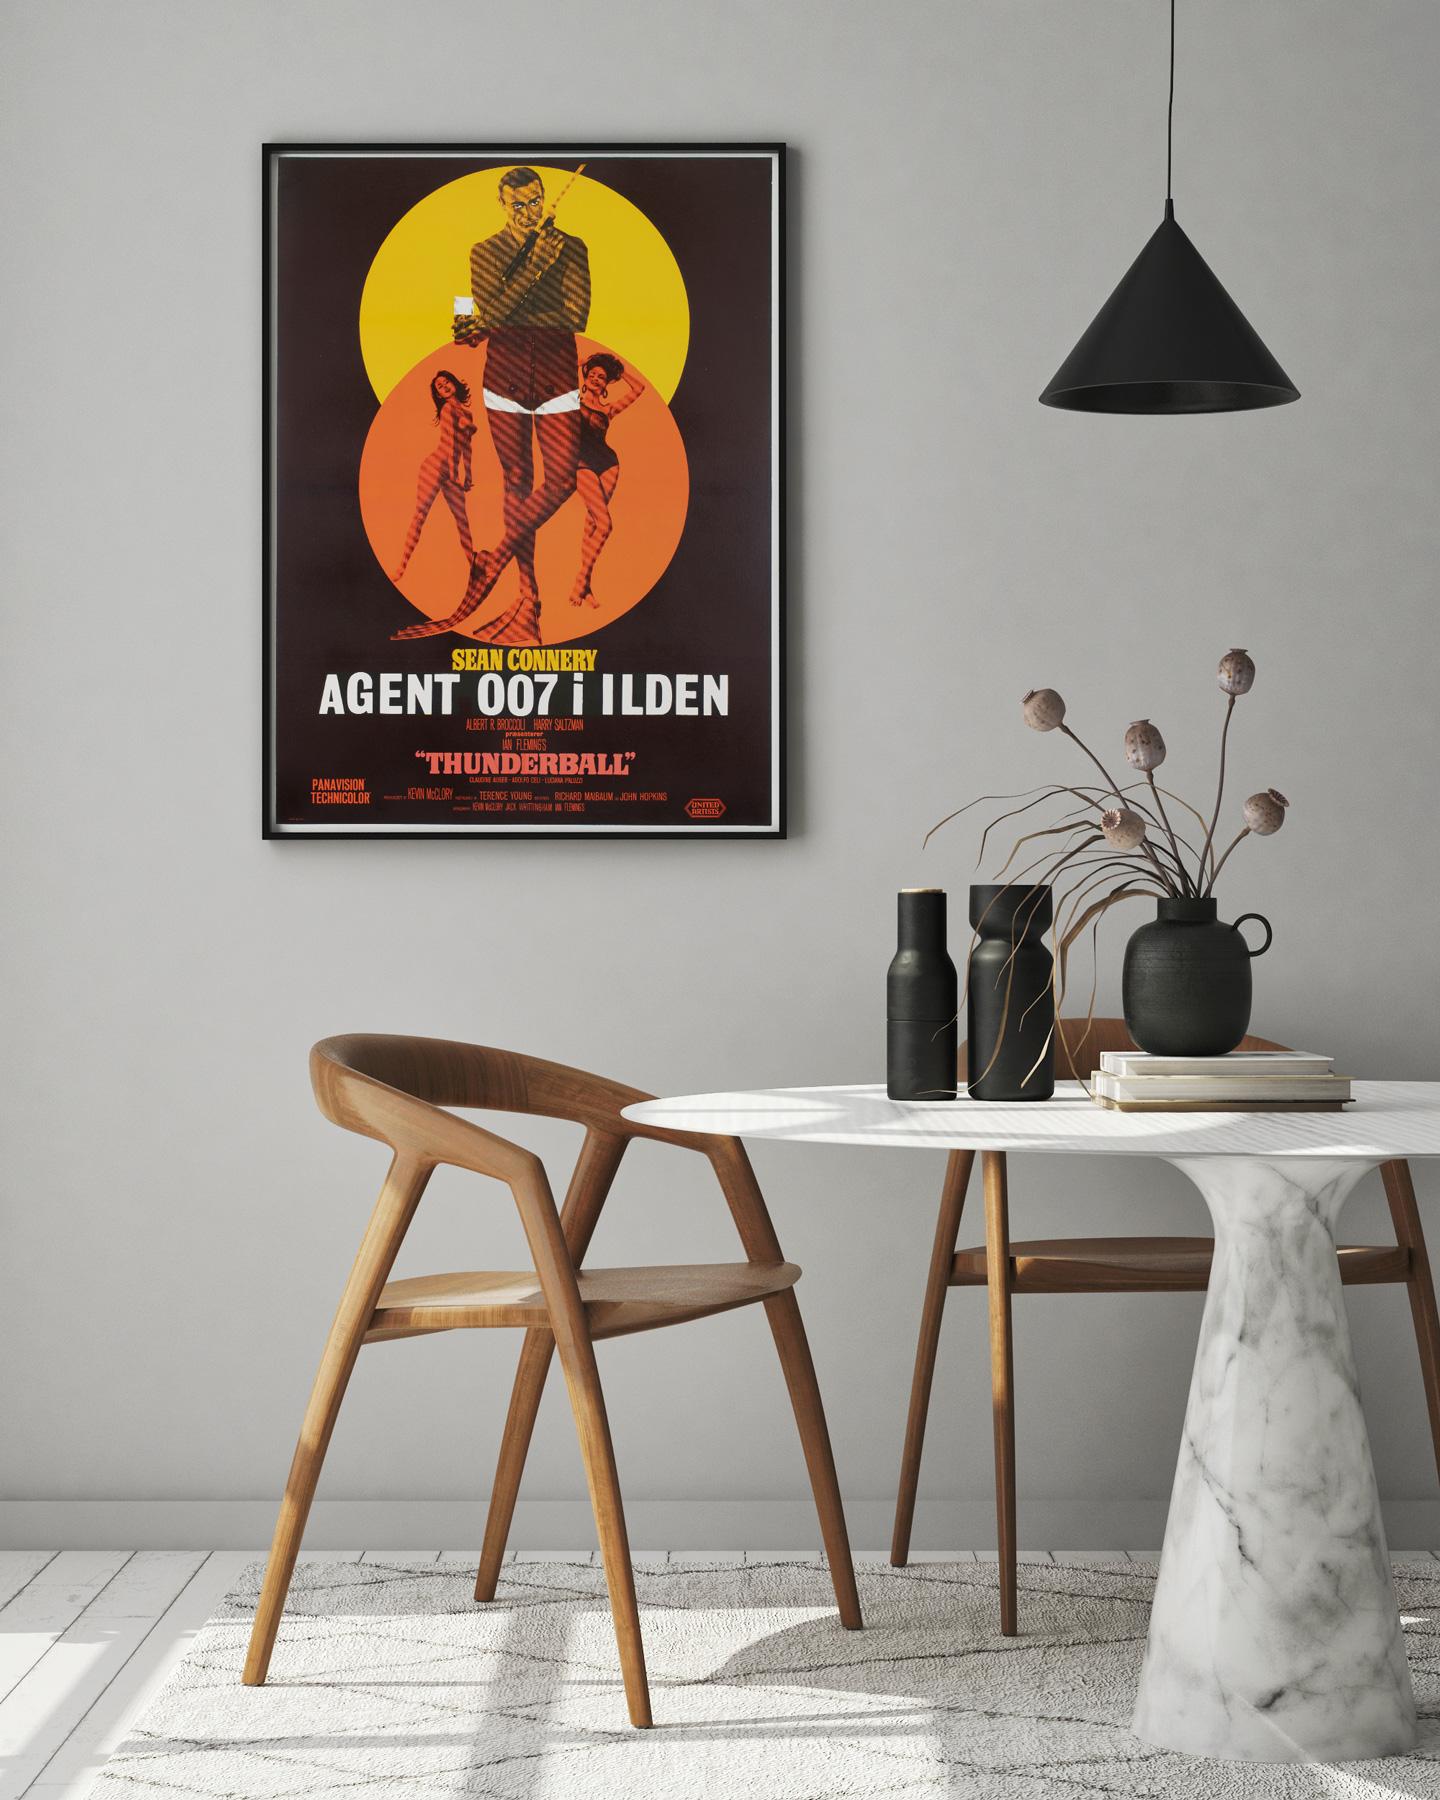 La magnifique affiche danoise de la première sortie du film Thunderball, le favori de James Bond. Nous adorons le design de cette affiche, avec des couleurs fortes et fantastiques. L'une des meilleures affiches du titre et extrêmement rare. 

Cette